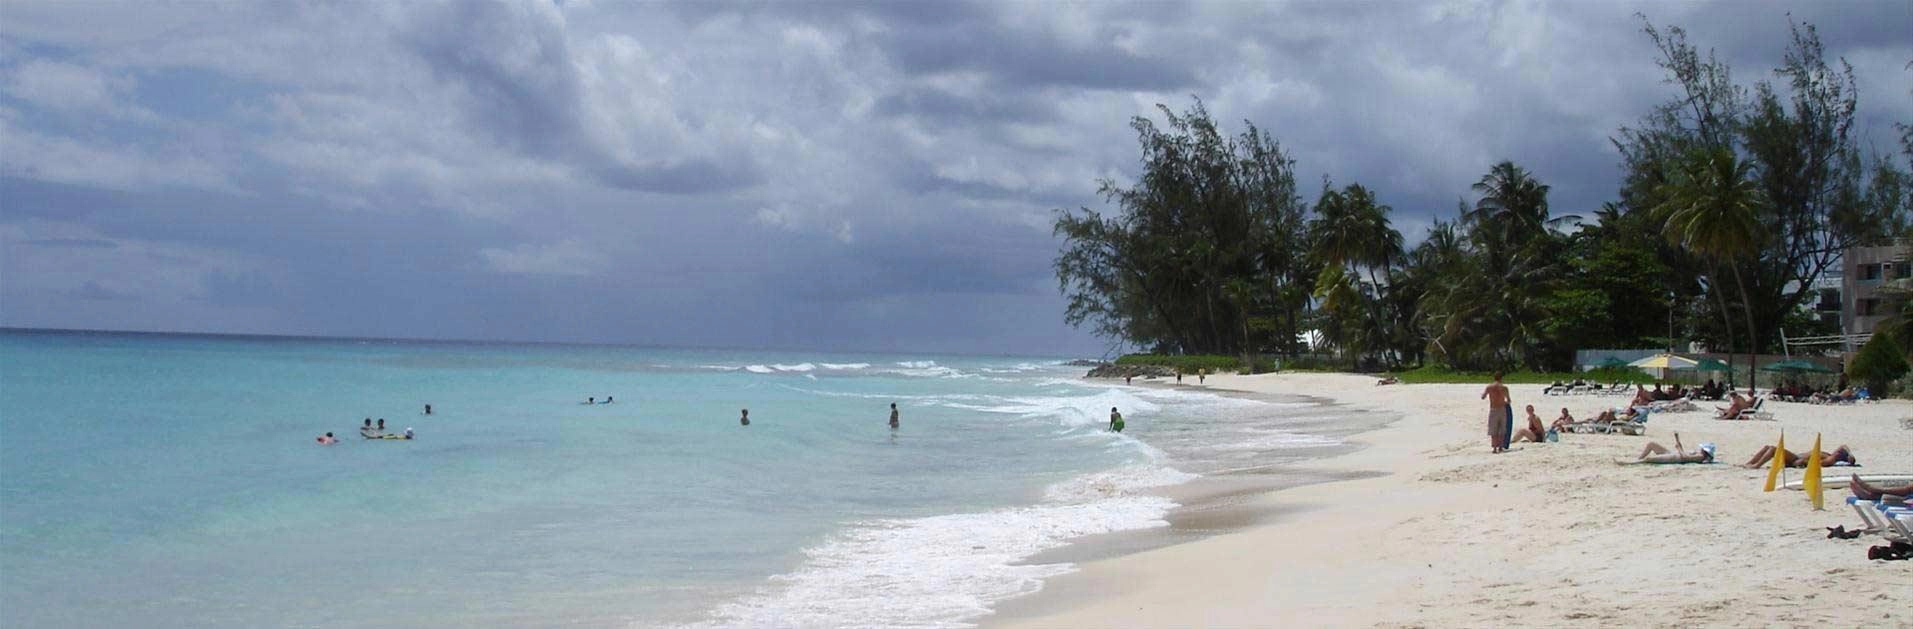  Accra  strand - Barbados